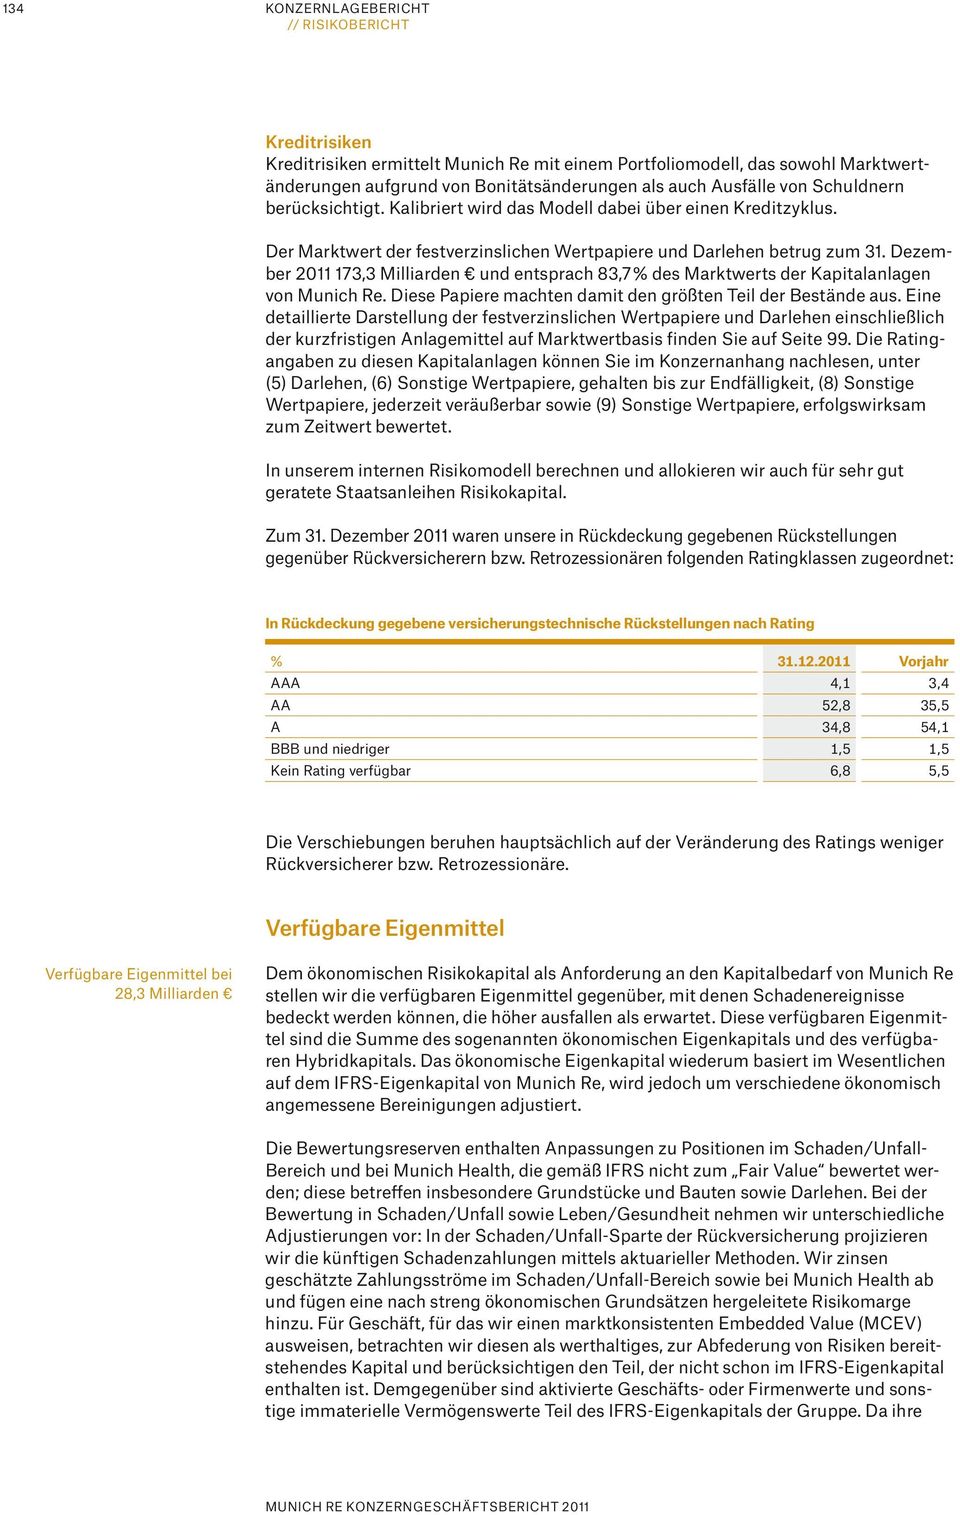 Dezember 2011 173,3 Milliarden und entsprach 83,7 % des Marktwerts der Kapitalanlagen von Munich Re. Diese Papiere machten damit den größten Teil der Bestände aus.